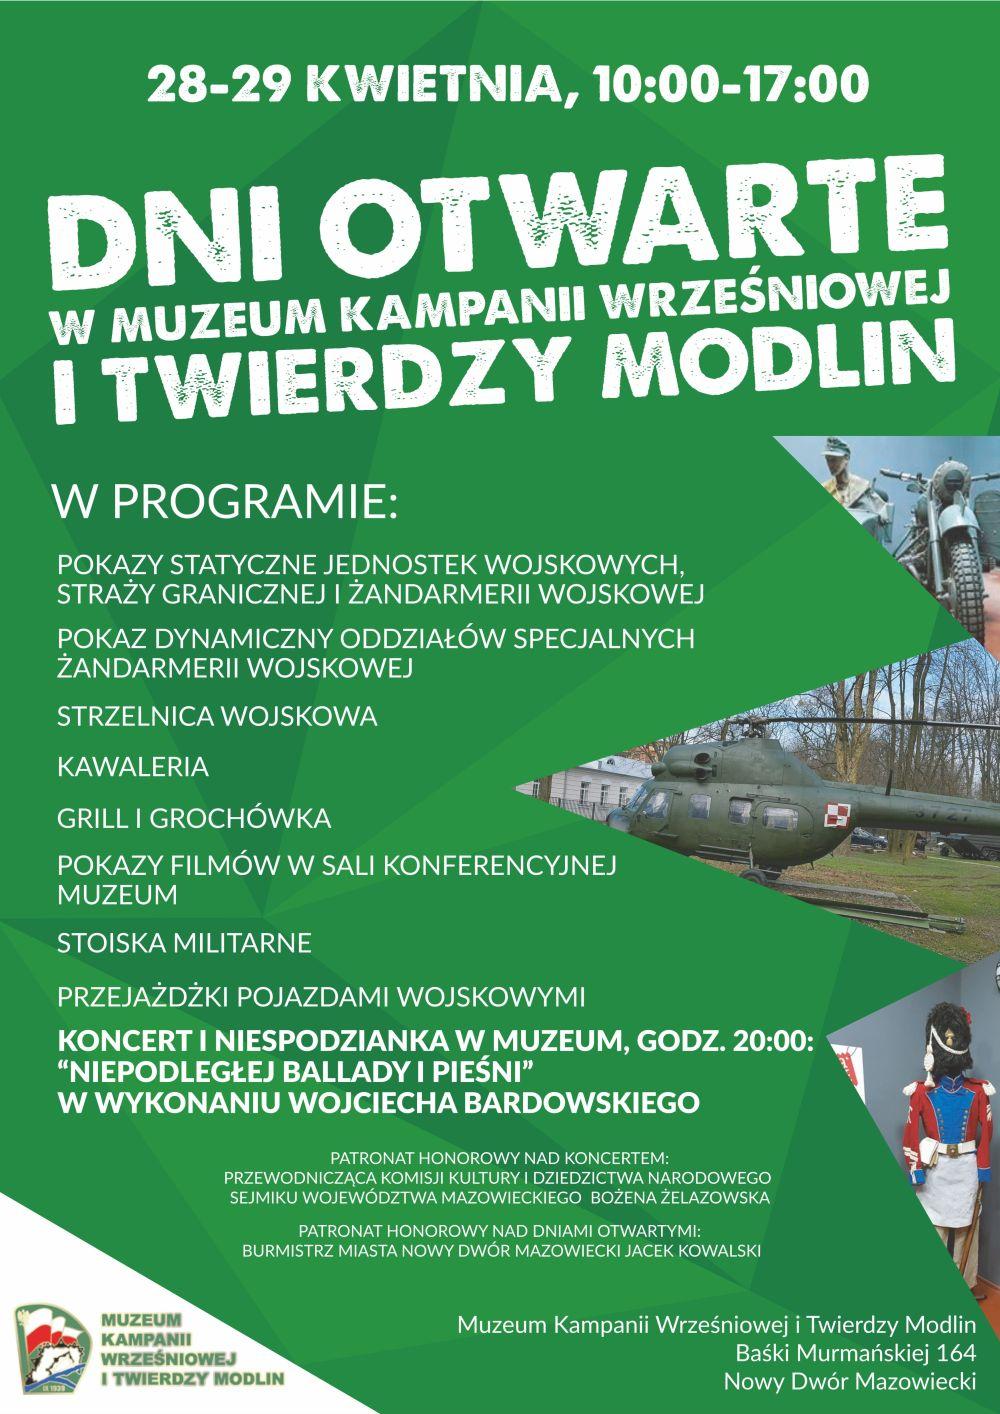 28-29.04.2018r. w godz. 10:00-17:00 Dni Otwarte Muzeum Kampanii Wrześniowej i Twierdzy Modlin.